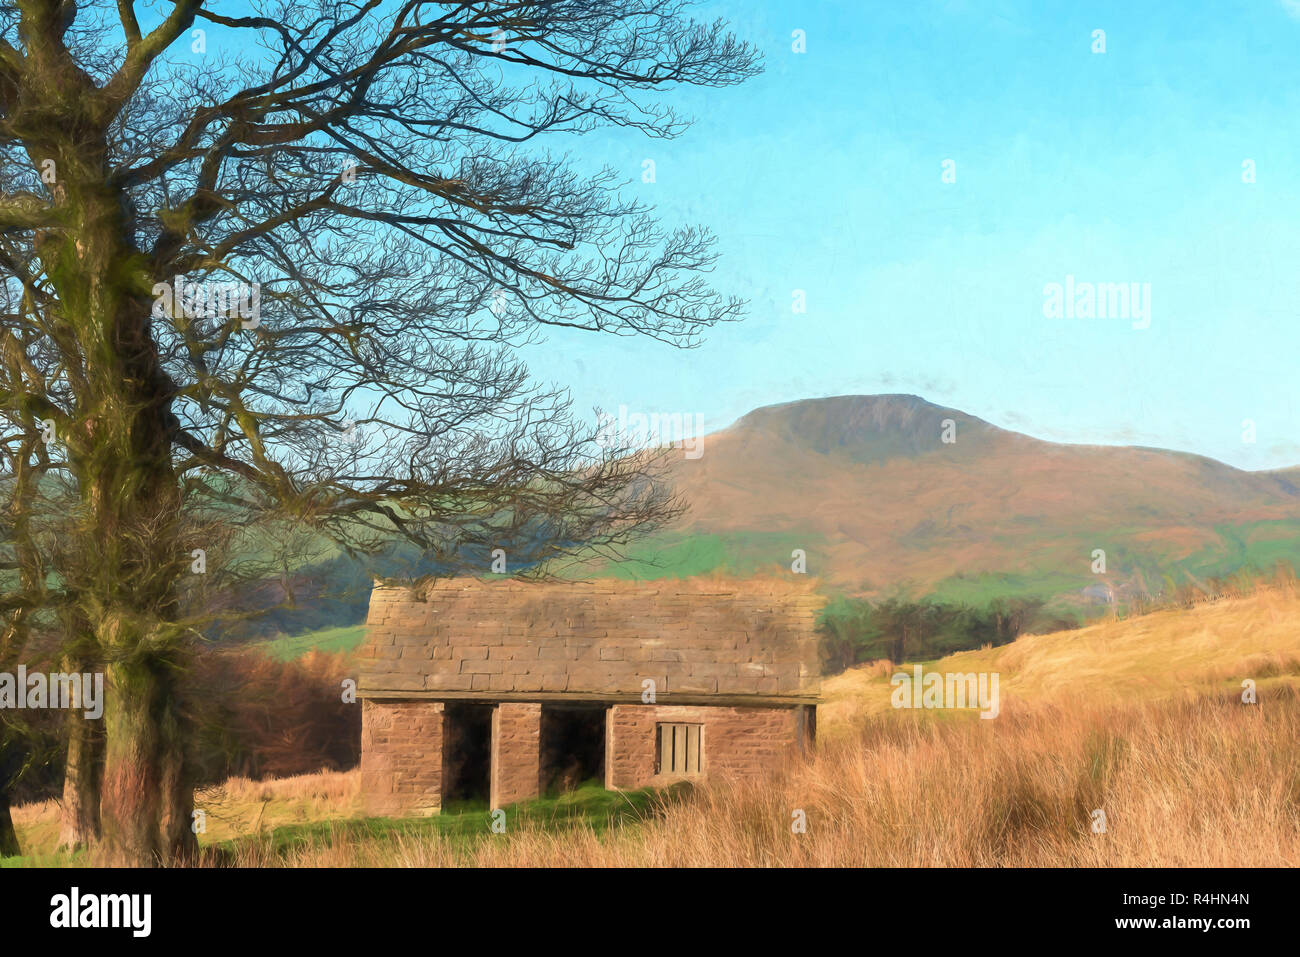 Un acquerello digitale della vista di una lontana Shutlingsloe hill nel Cheshire, il Parco Nazionale di Peak District, UK. Foto Stock